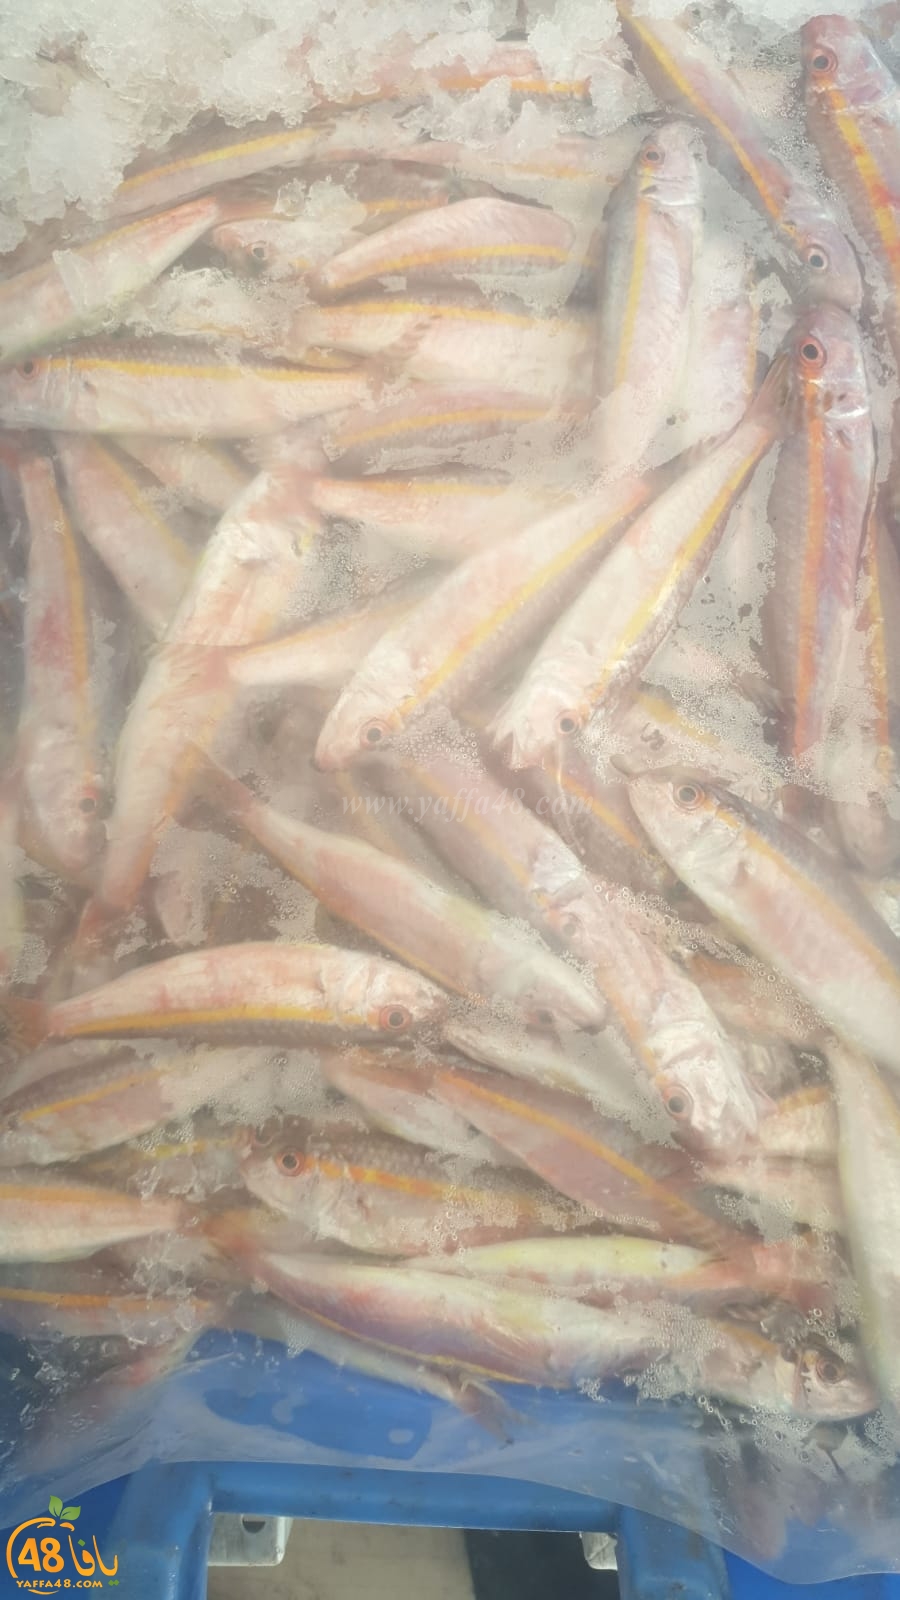  موعدكم مع سوق بيع الأسماك في ميناء يافا غداً الجمعة ويوم السبت